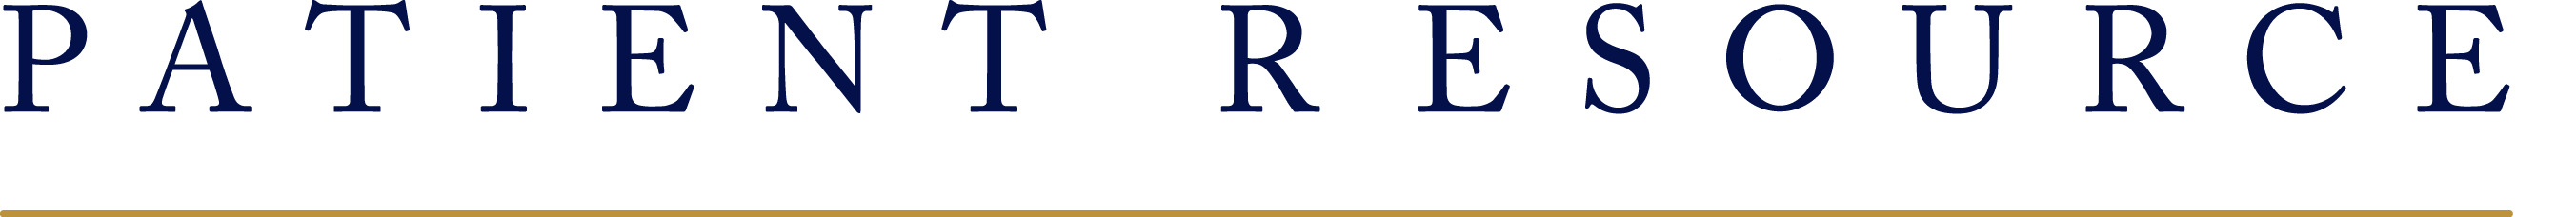 Patient Resource Logo